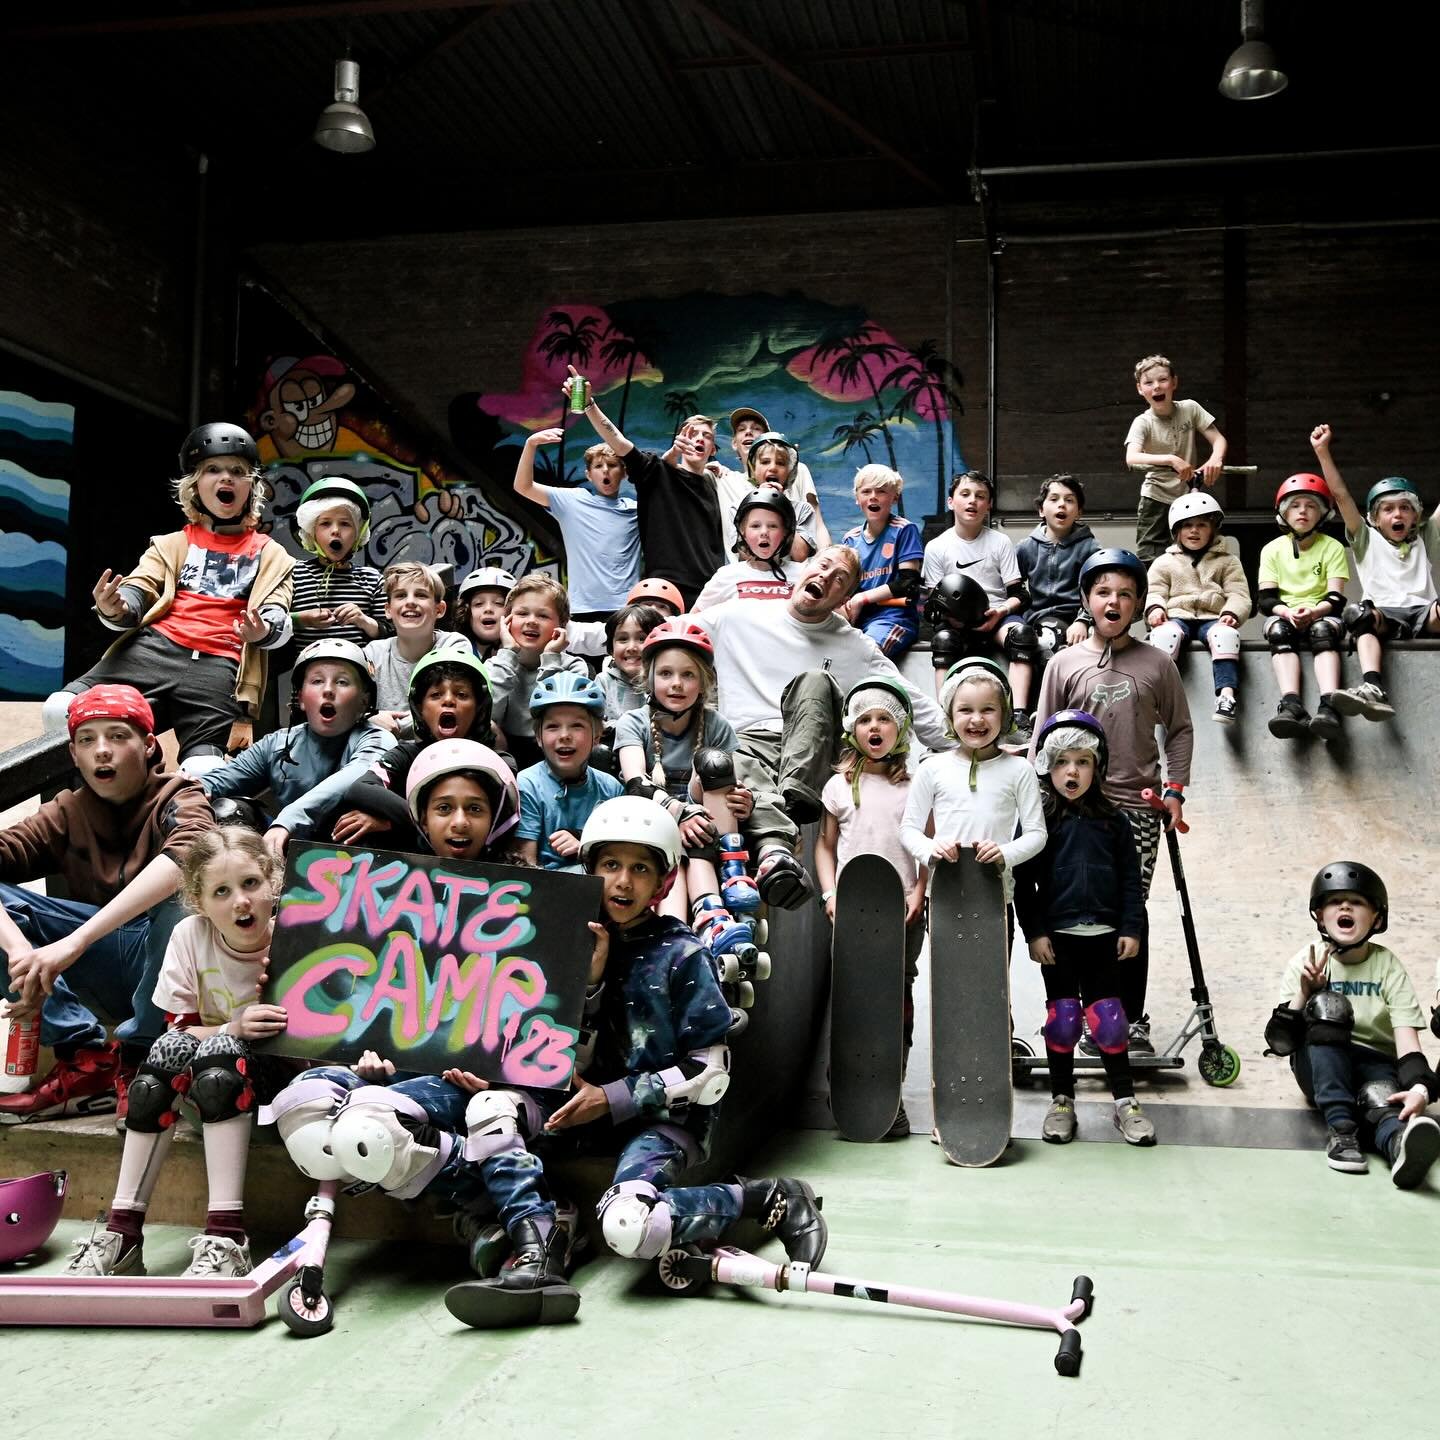 Zien wij jullie bij de volgende MEIKAMP - Ma 29 April t/m Vr 10 Mei☀️☀️

Wil jij meedoen?? Schrijf je nu in via de website (Link in bio)

📸 @justineellulphotographer 

#skate #kidskamp #skateboard #fun #skatefun #spelletjes #stuntscooter #leren #vri